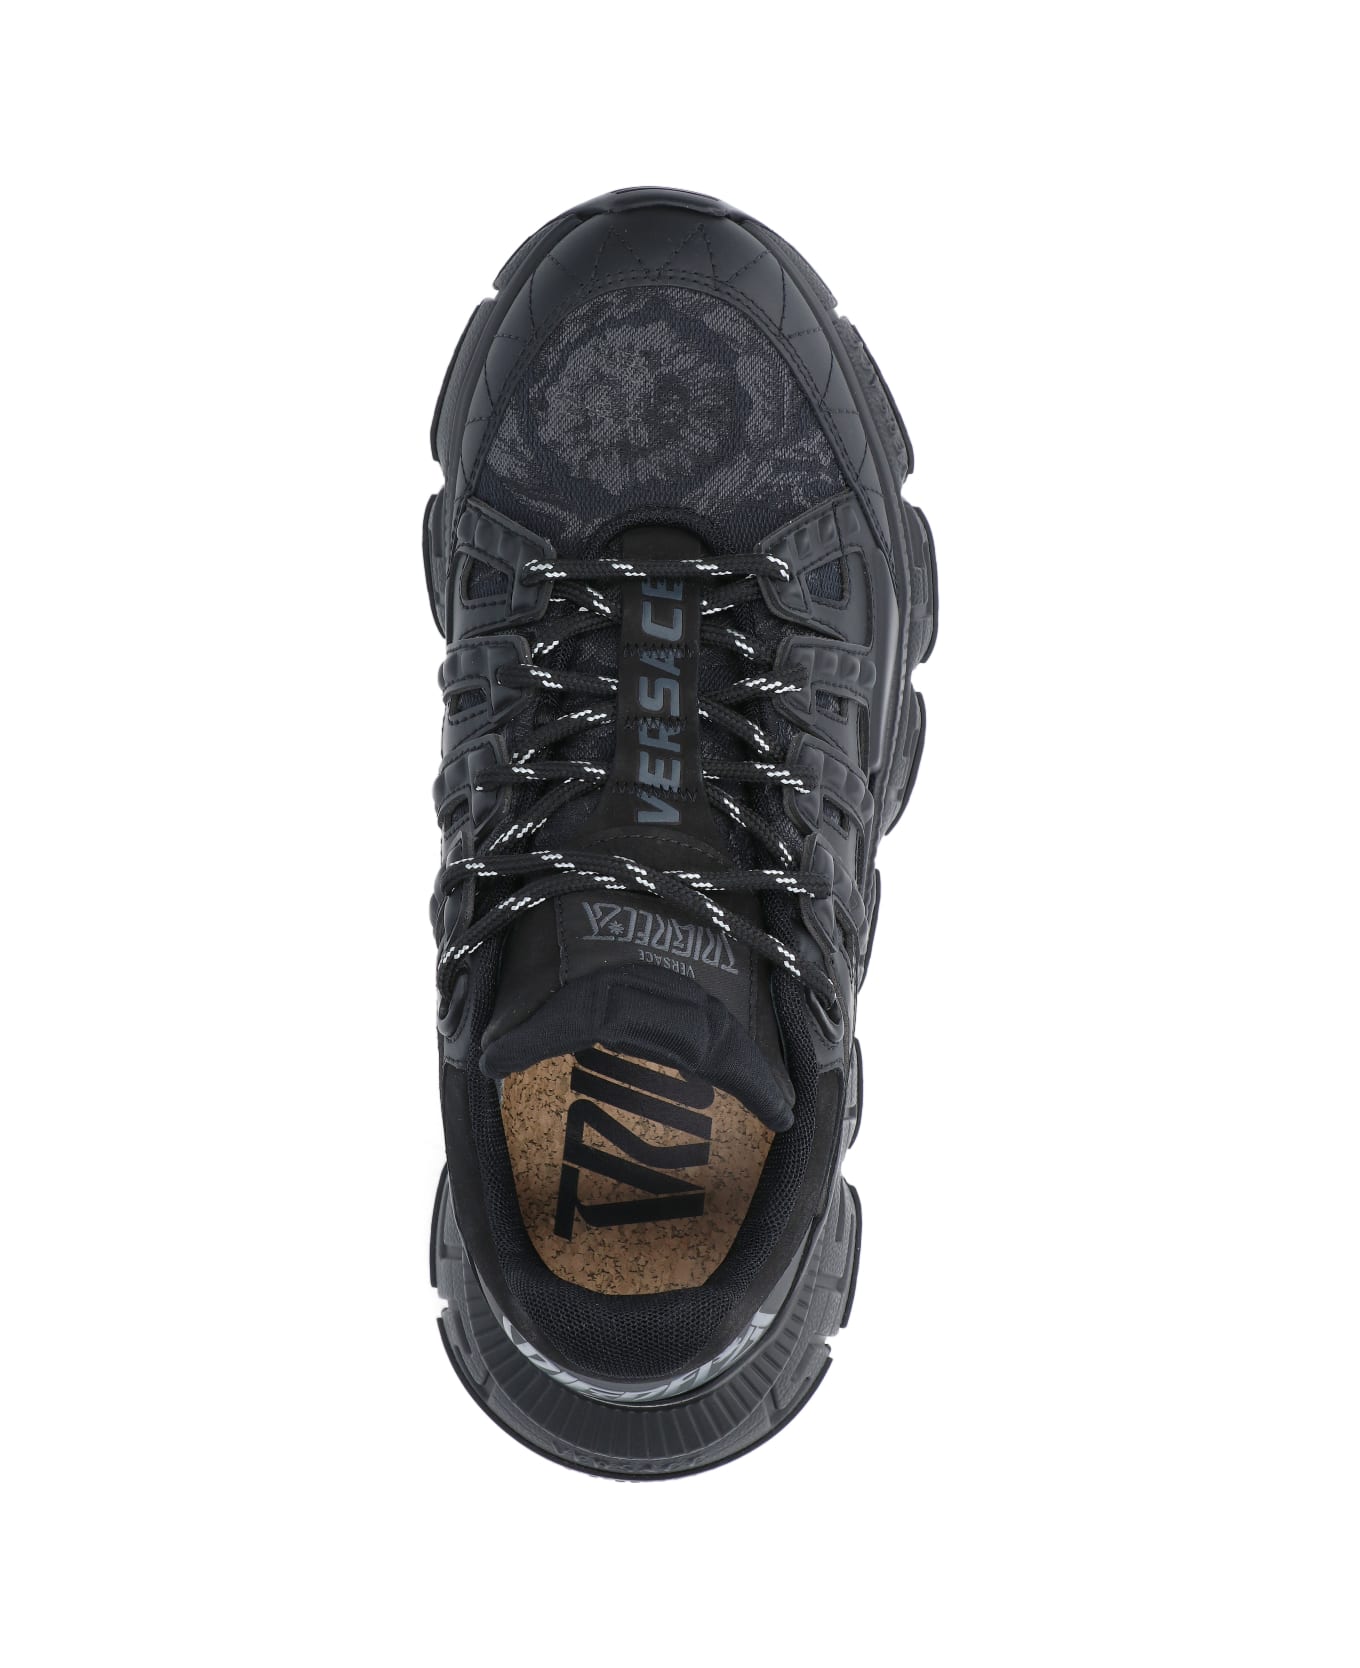 Versace Black Fabric Blend Sneakers - Black スニーカー